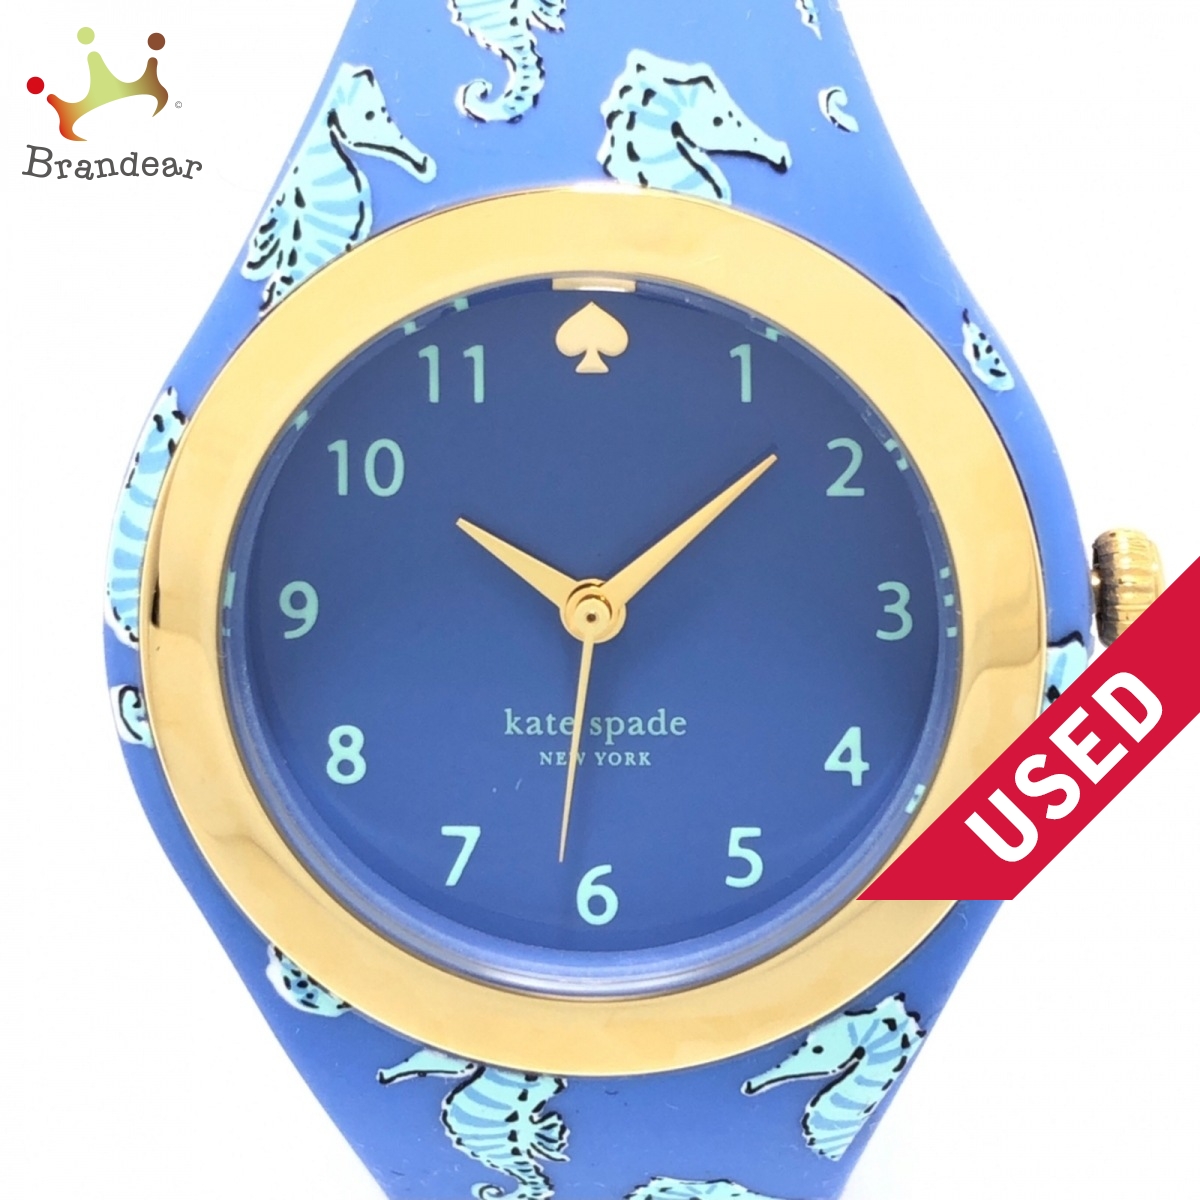 国内外の人気 Kate spade ケイトスペード 腕時計 ラバーベルト ブルー